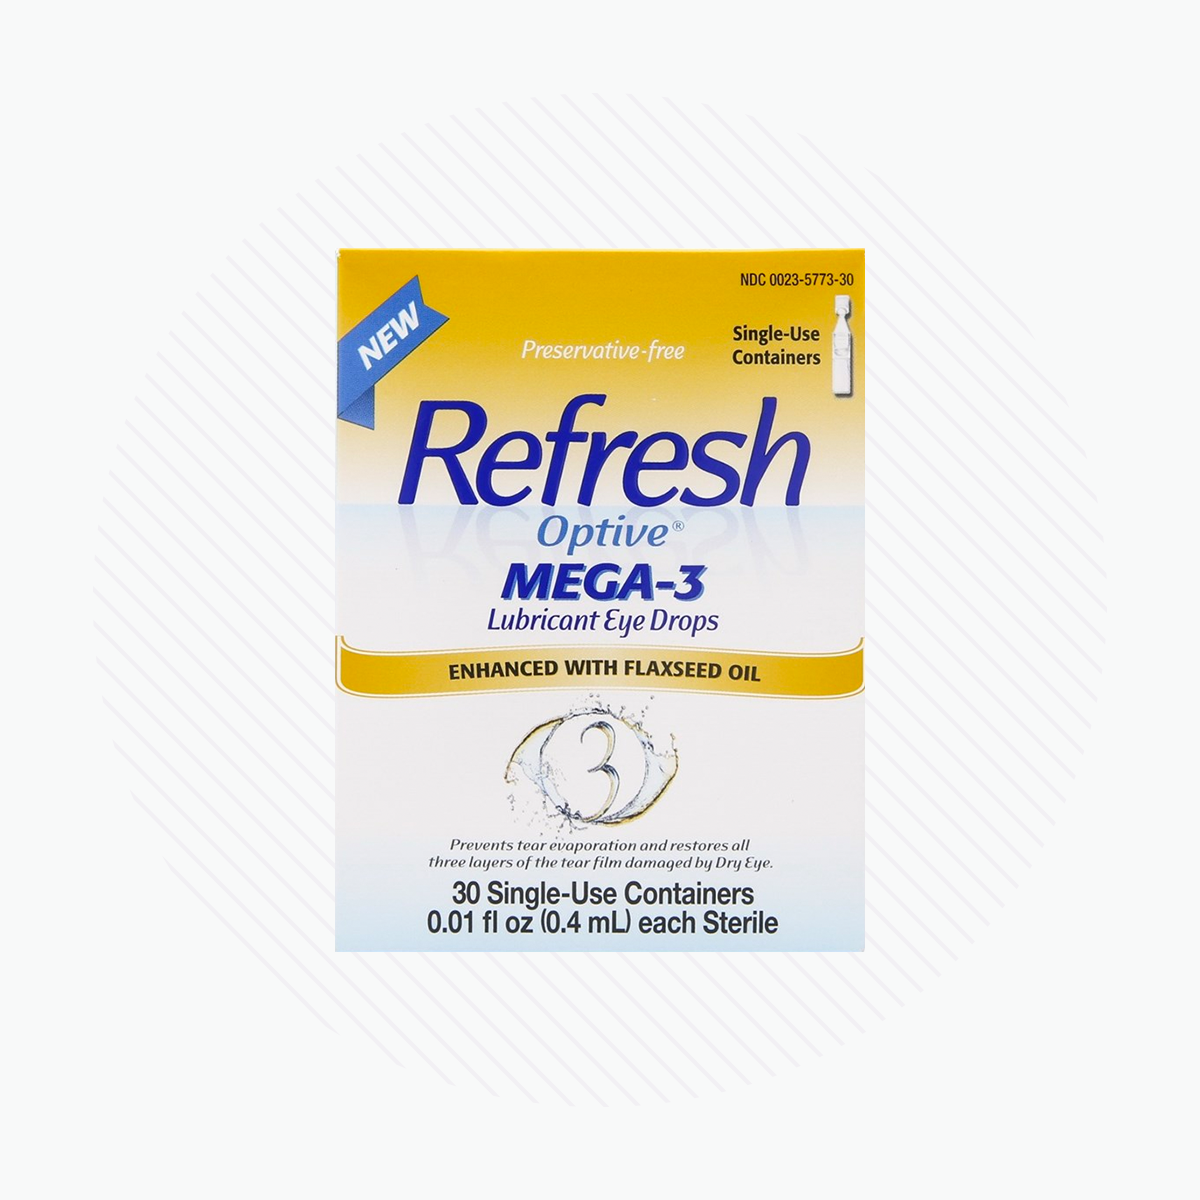 REFRESH OPTIVE MEGA-3 ( 0.4mL Vials)